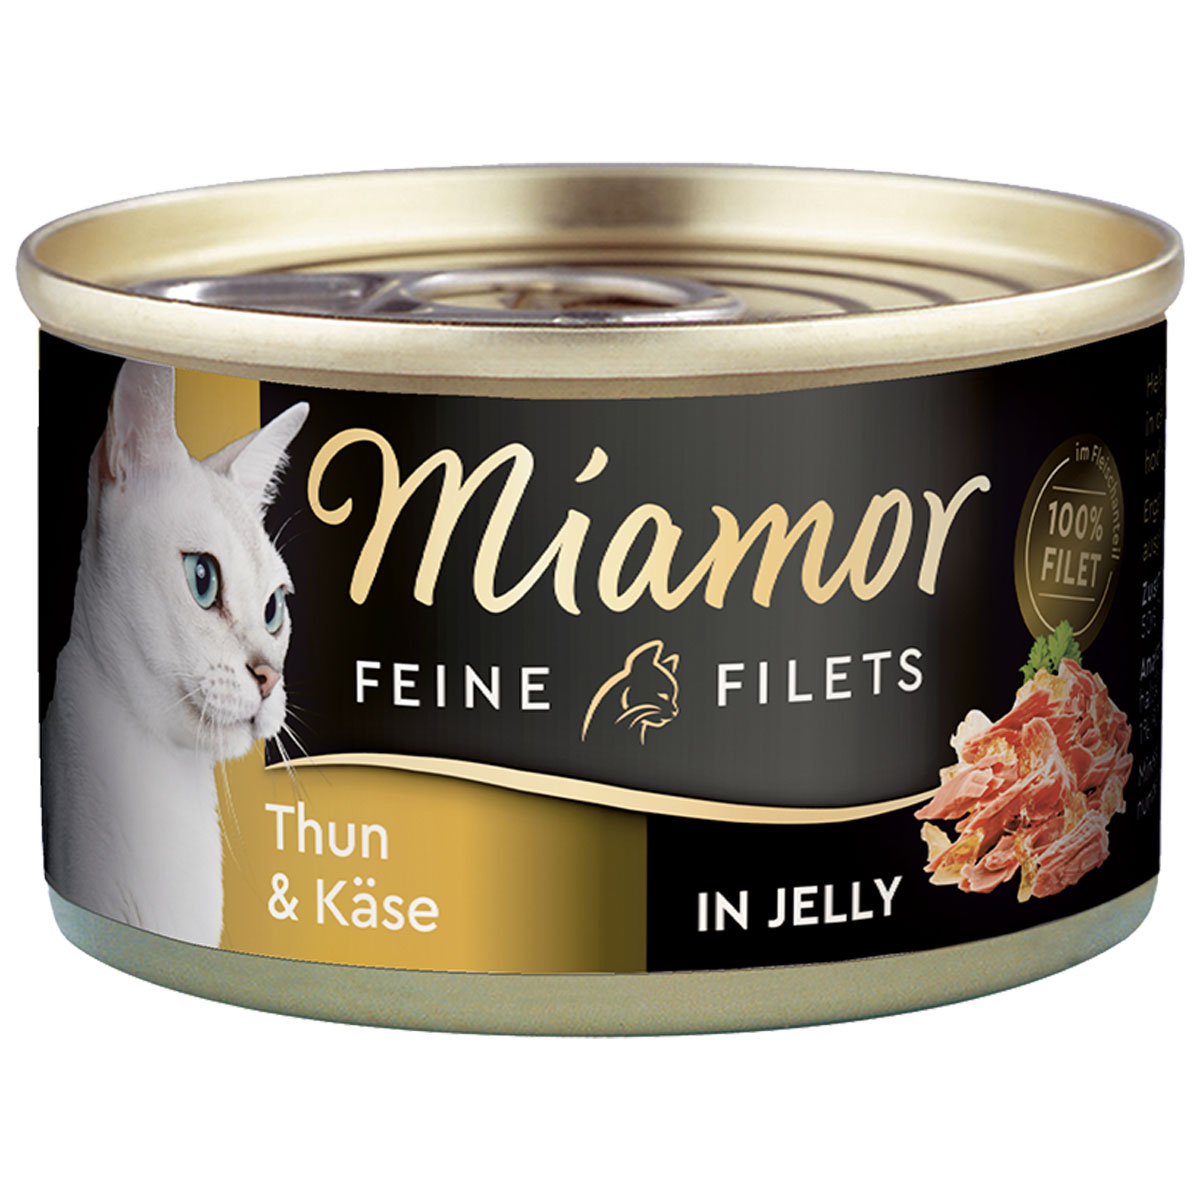 Miamor Feine Filets v želé s tuňákem a sýrem, 100g plechovka 24× 100 g